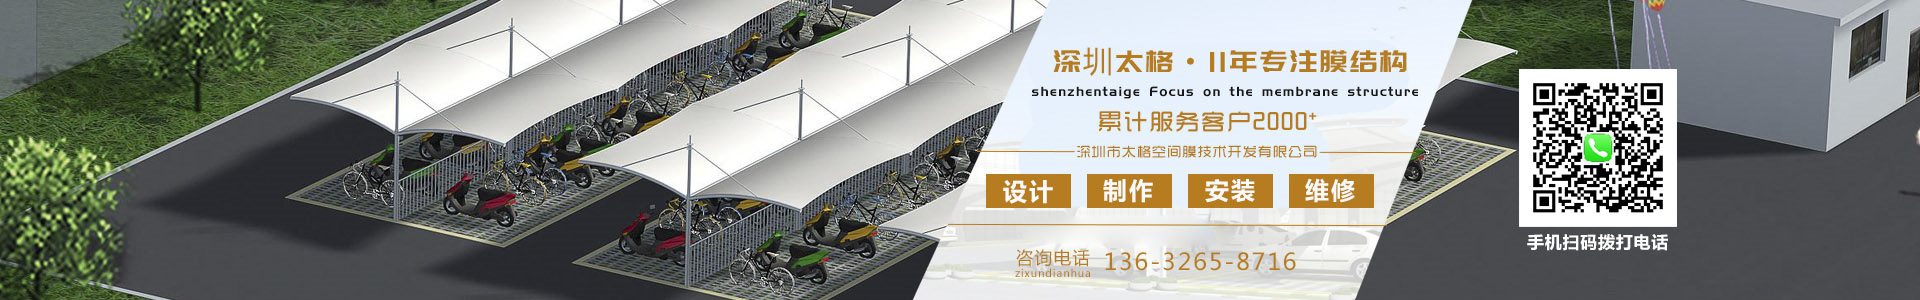 膜结构车棚报价-膜结构施工-膜结构工程公司 - 深圳市快盈ll